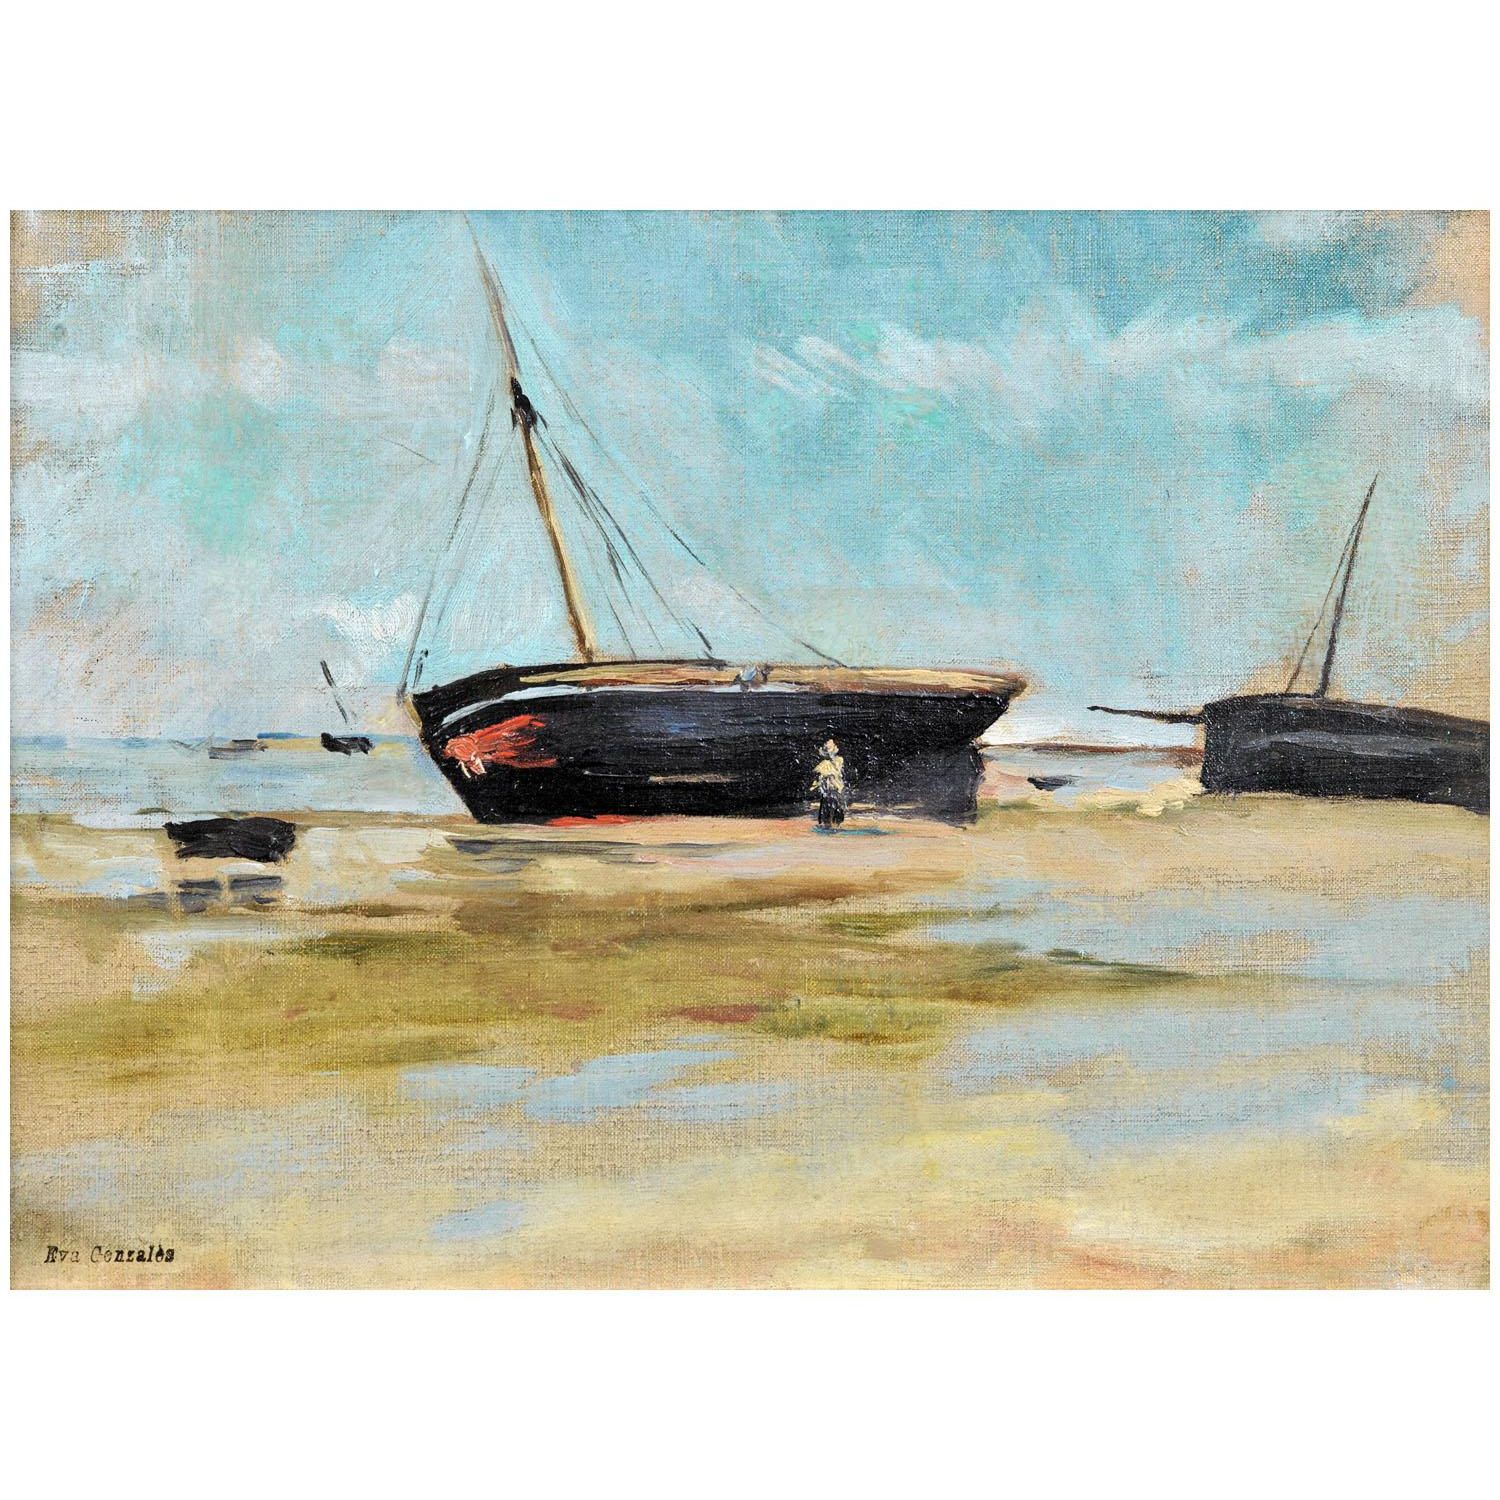 Eva Gonzales. Bateau à marée basse. 1877. Collection privée